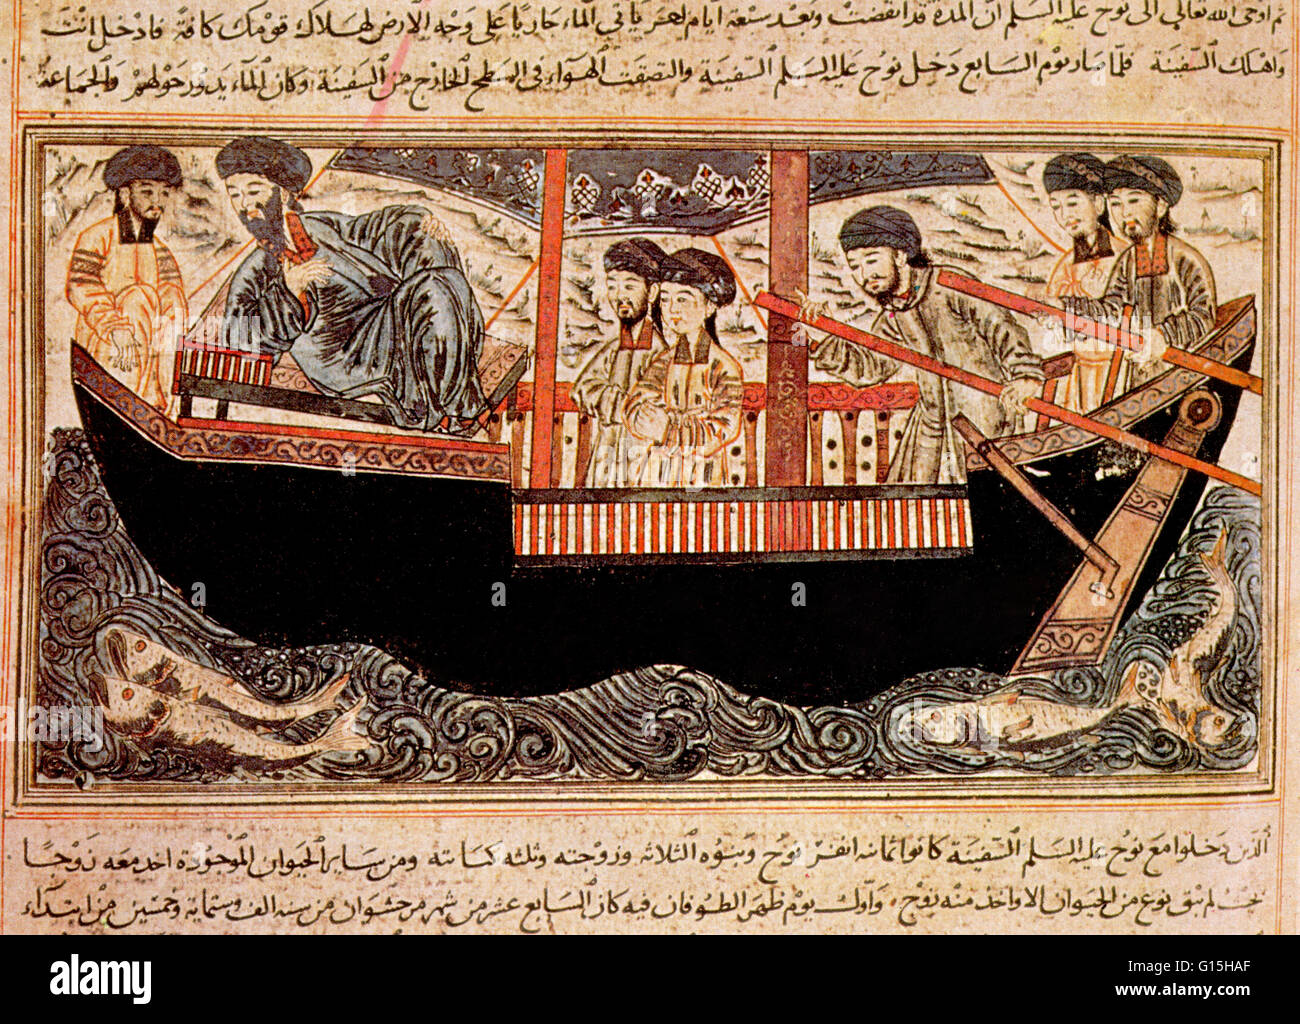 El Jami al-Tawarikh (Historia Universal) es un trabajo de la literatura iraní y la historia escrita por Rashid-al-Din Hamadani al inicio del siglo 14. Estas miniaturas se realiza predominantemente en tonos rojos y azules, que están entre las mejores Islámicos tempranos Foto de stock